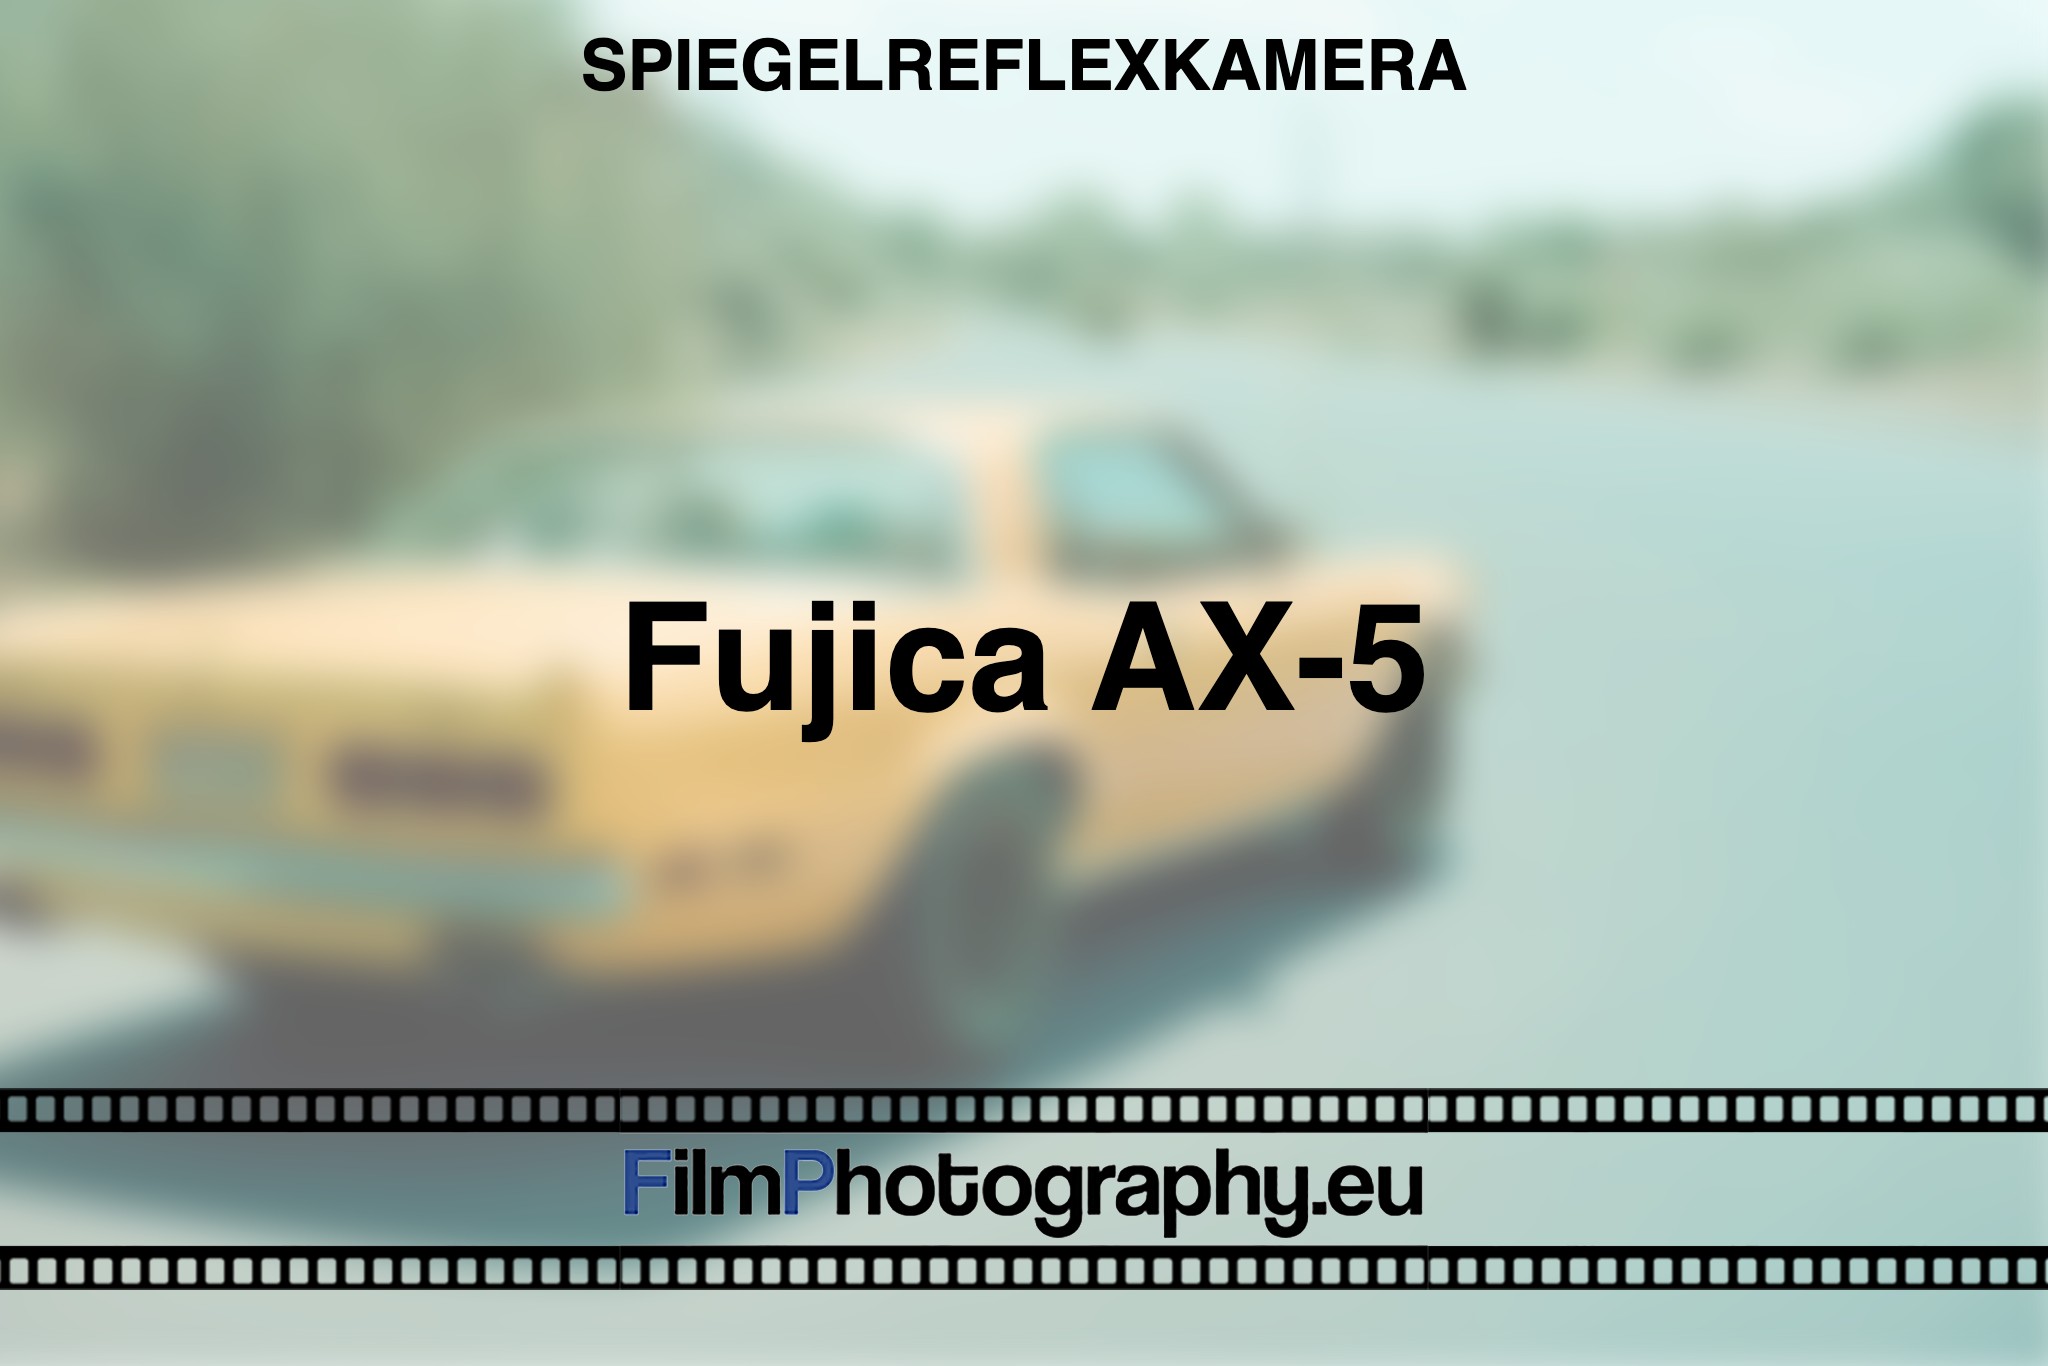 fujica-ax-5-spiegelreflexkamera-bnv